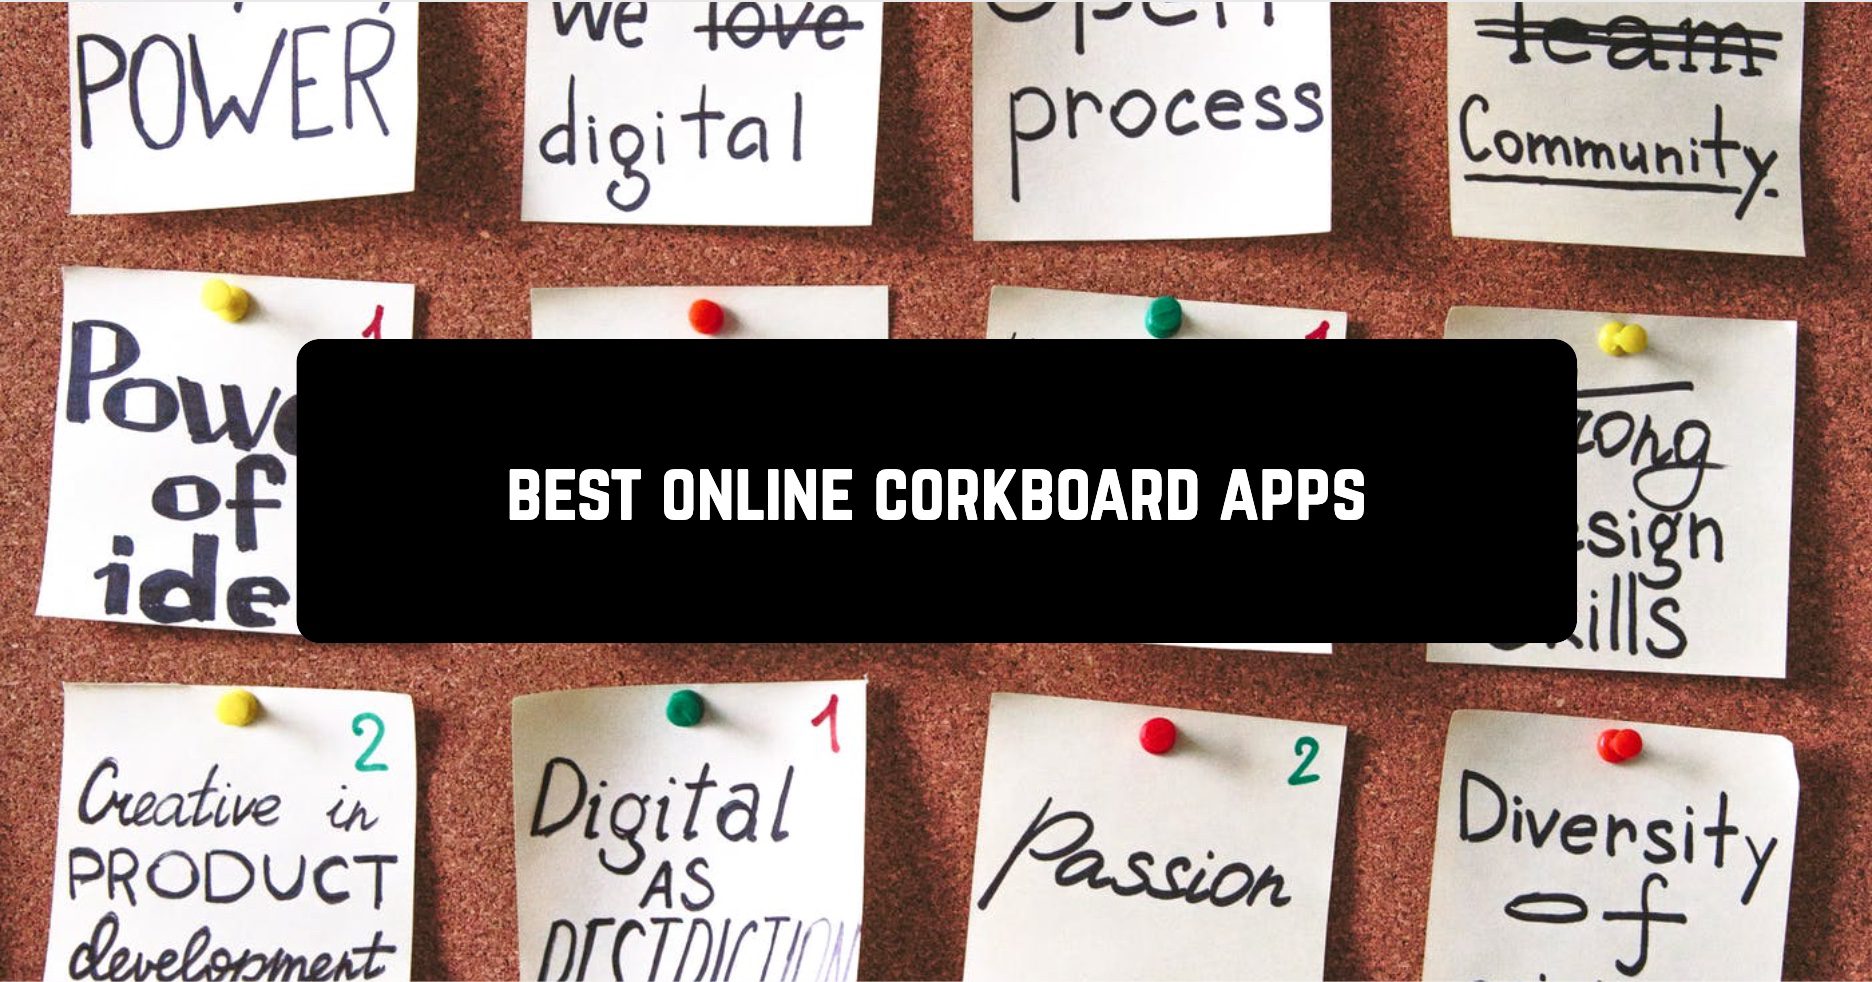 Best online corkboard apps